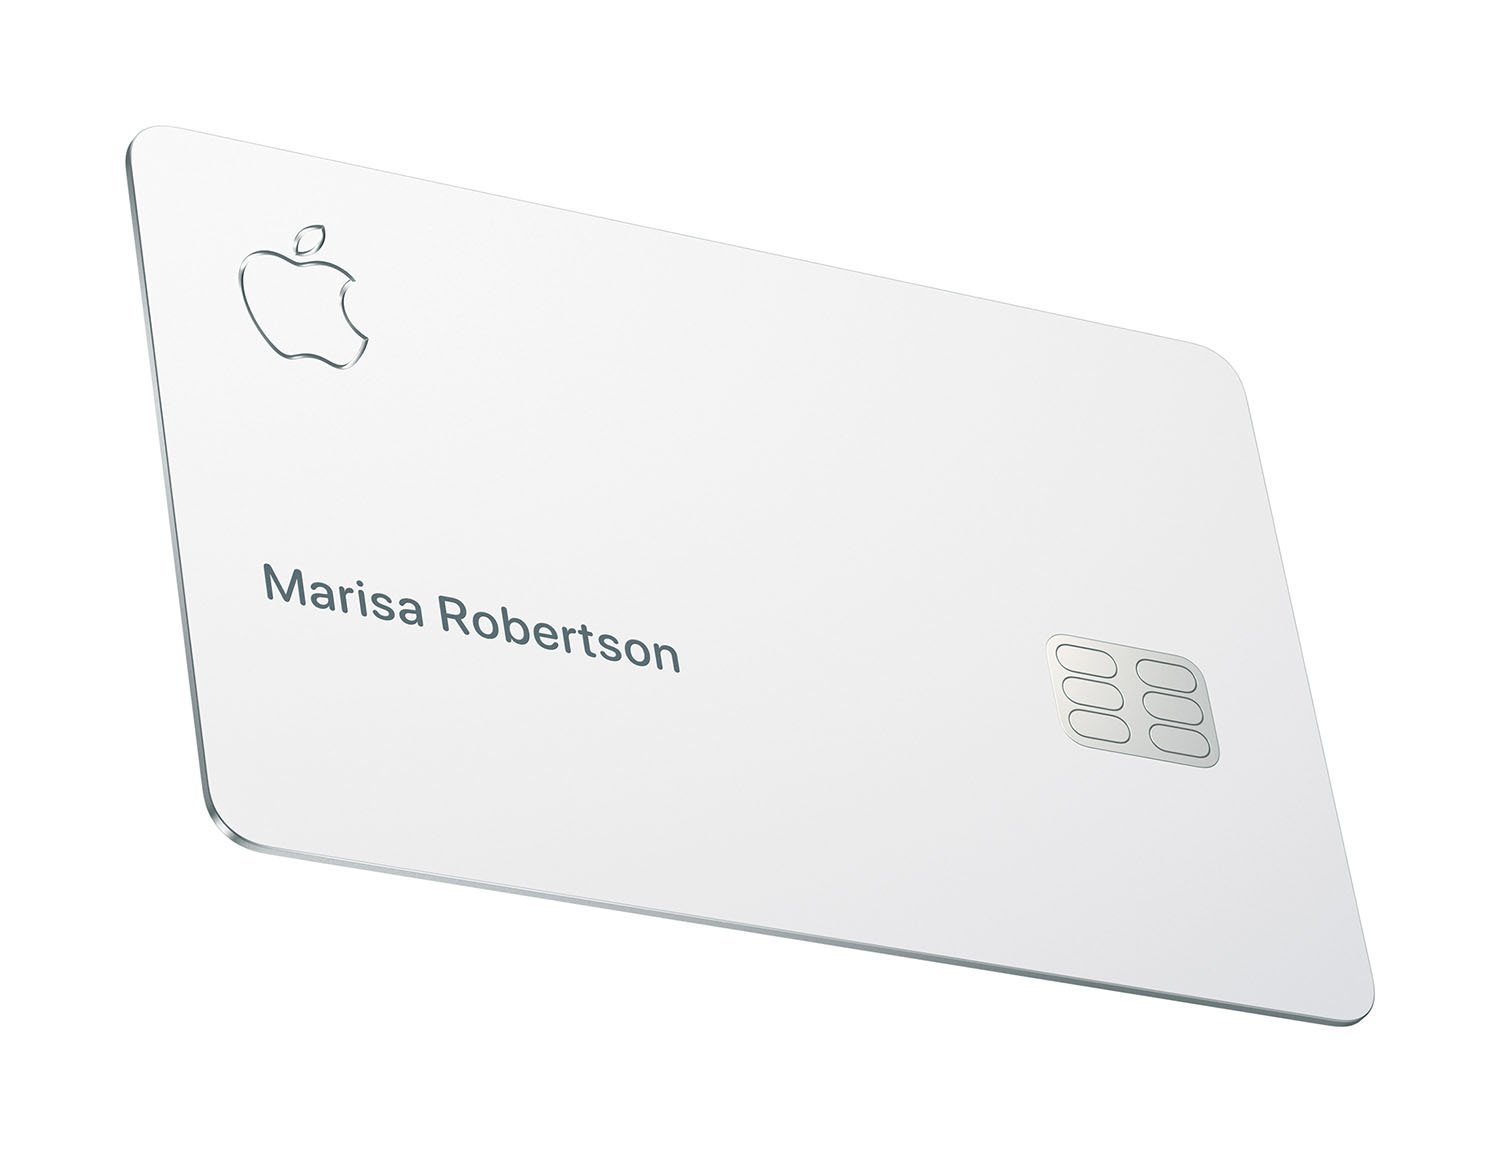 DMA-1-Apple-Card-available-today-Apple-Card-082019.jpg